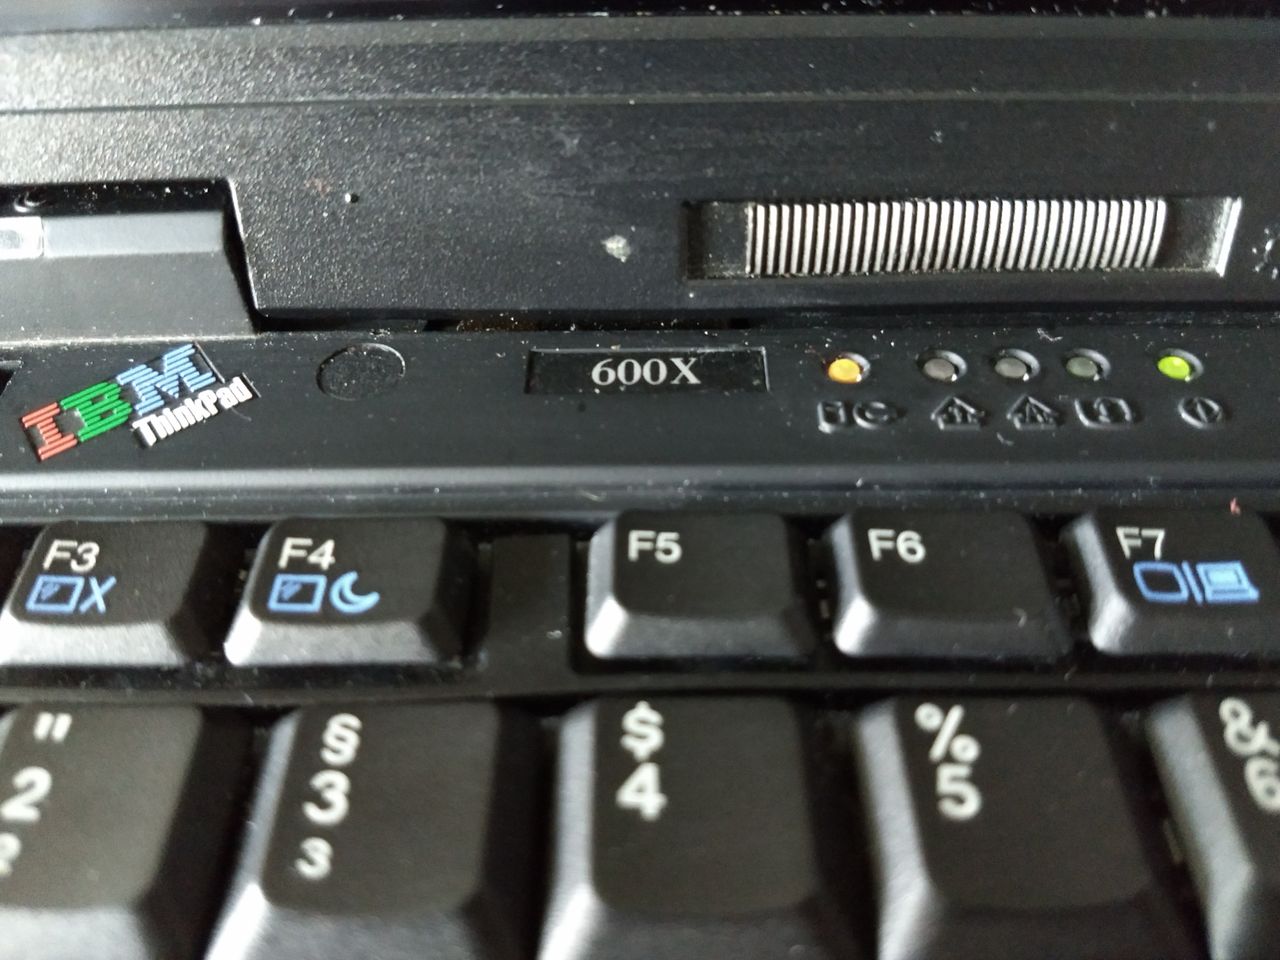 IBM ThinkPad 600 — ojciec serii T